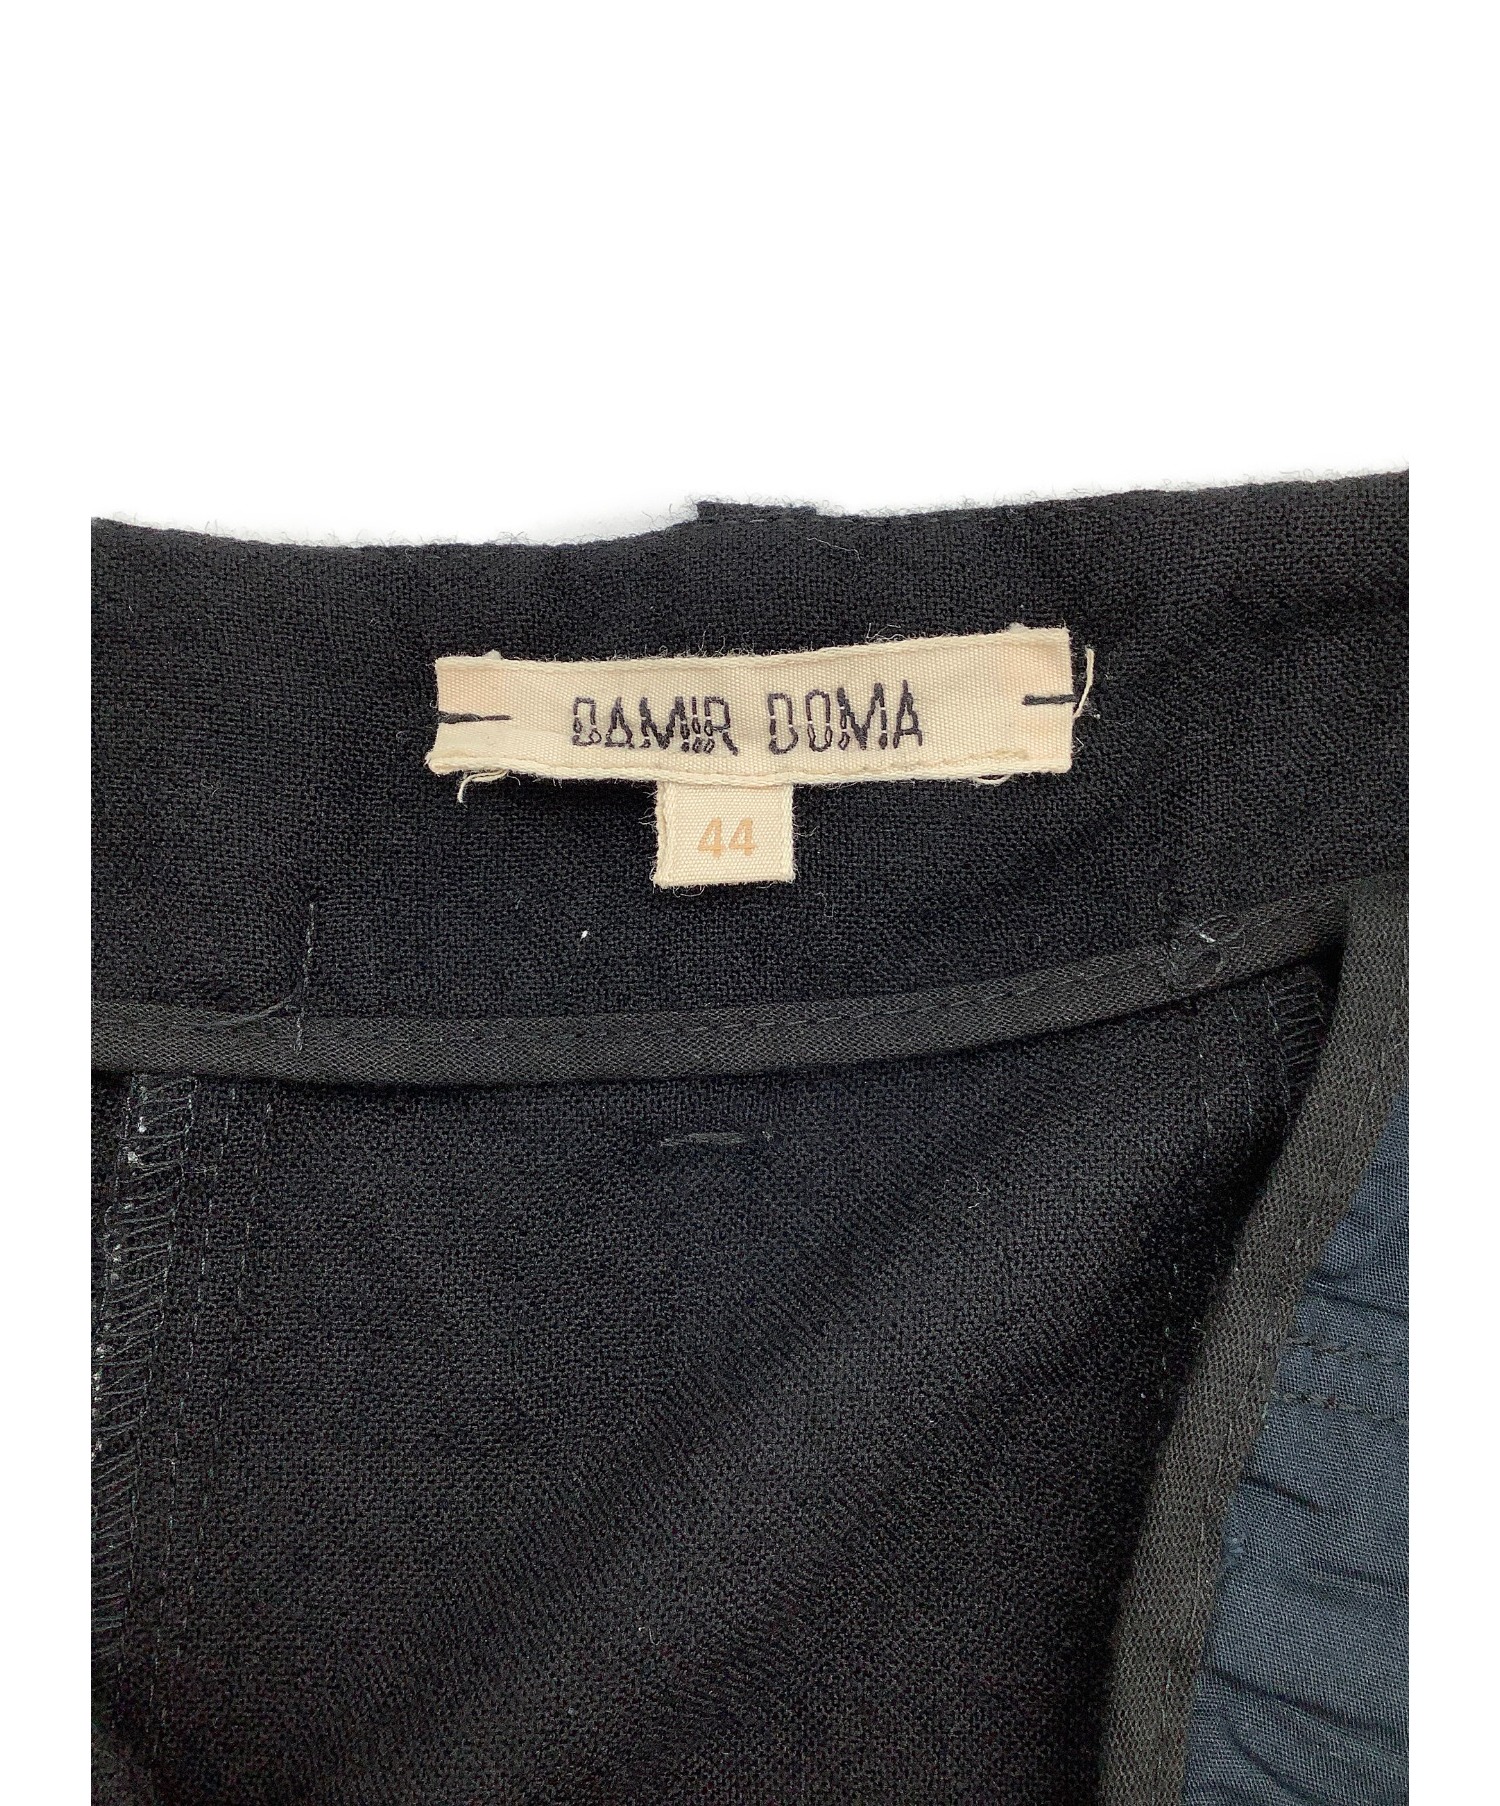 DAMIR DOMA (ダミールドーマ) ウールパンツ ブラック サイズ:44